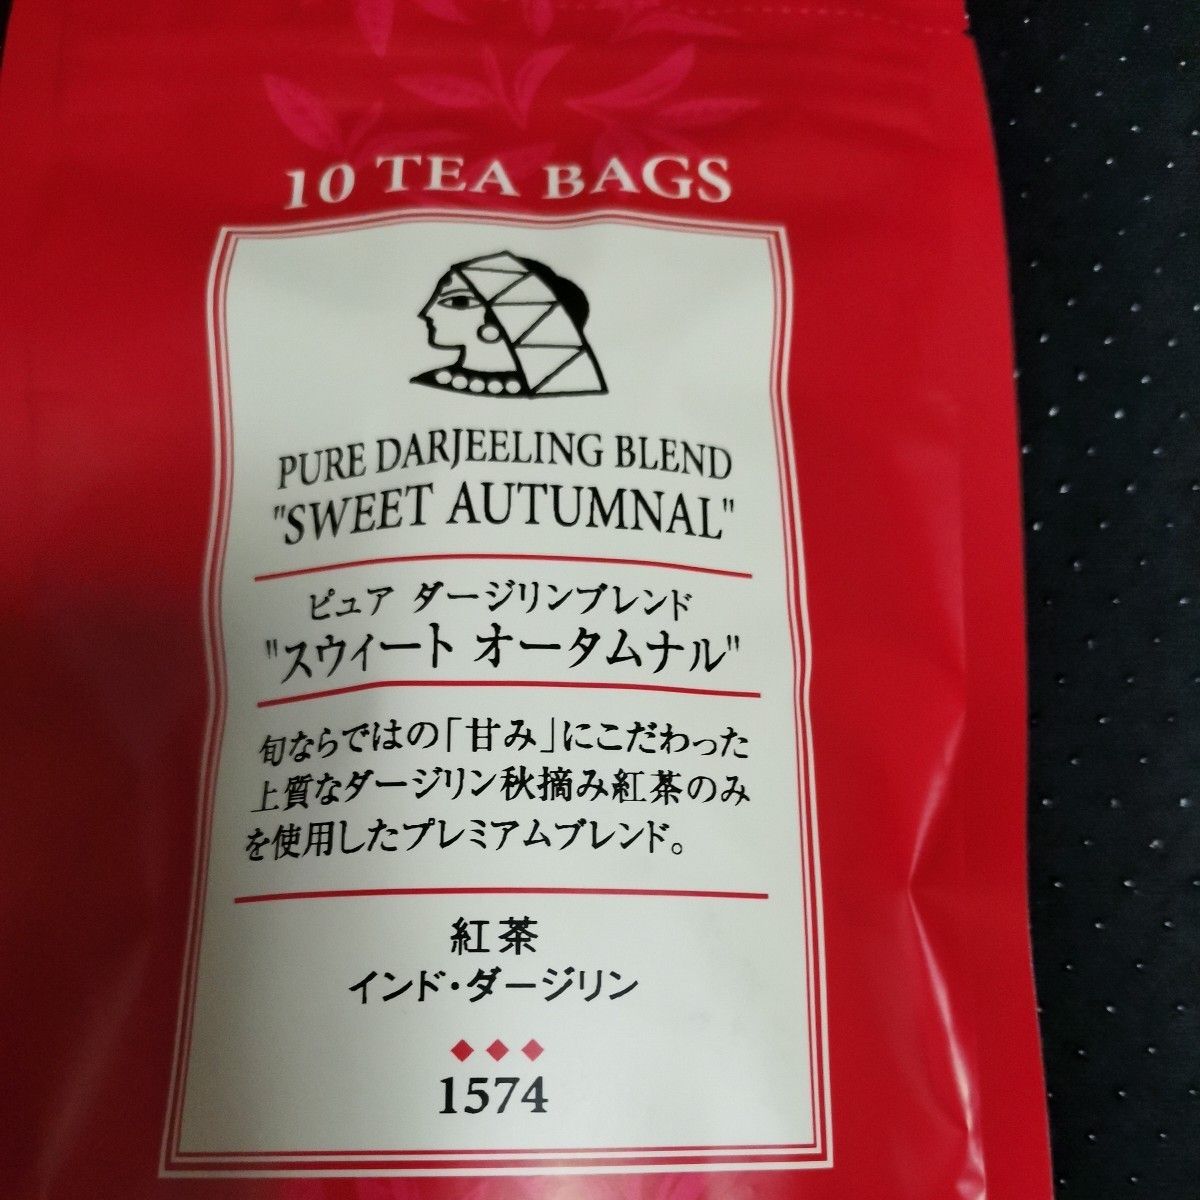 【送料無料】ルピシア ピュア ダージリン ブレンド スウィート オータムナル ティーバッグ 紅茶